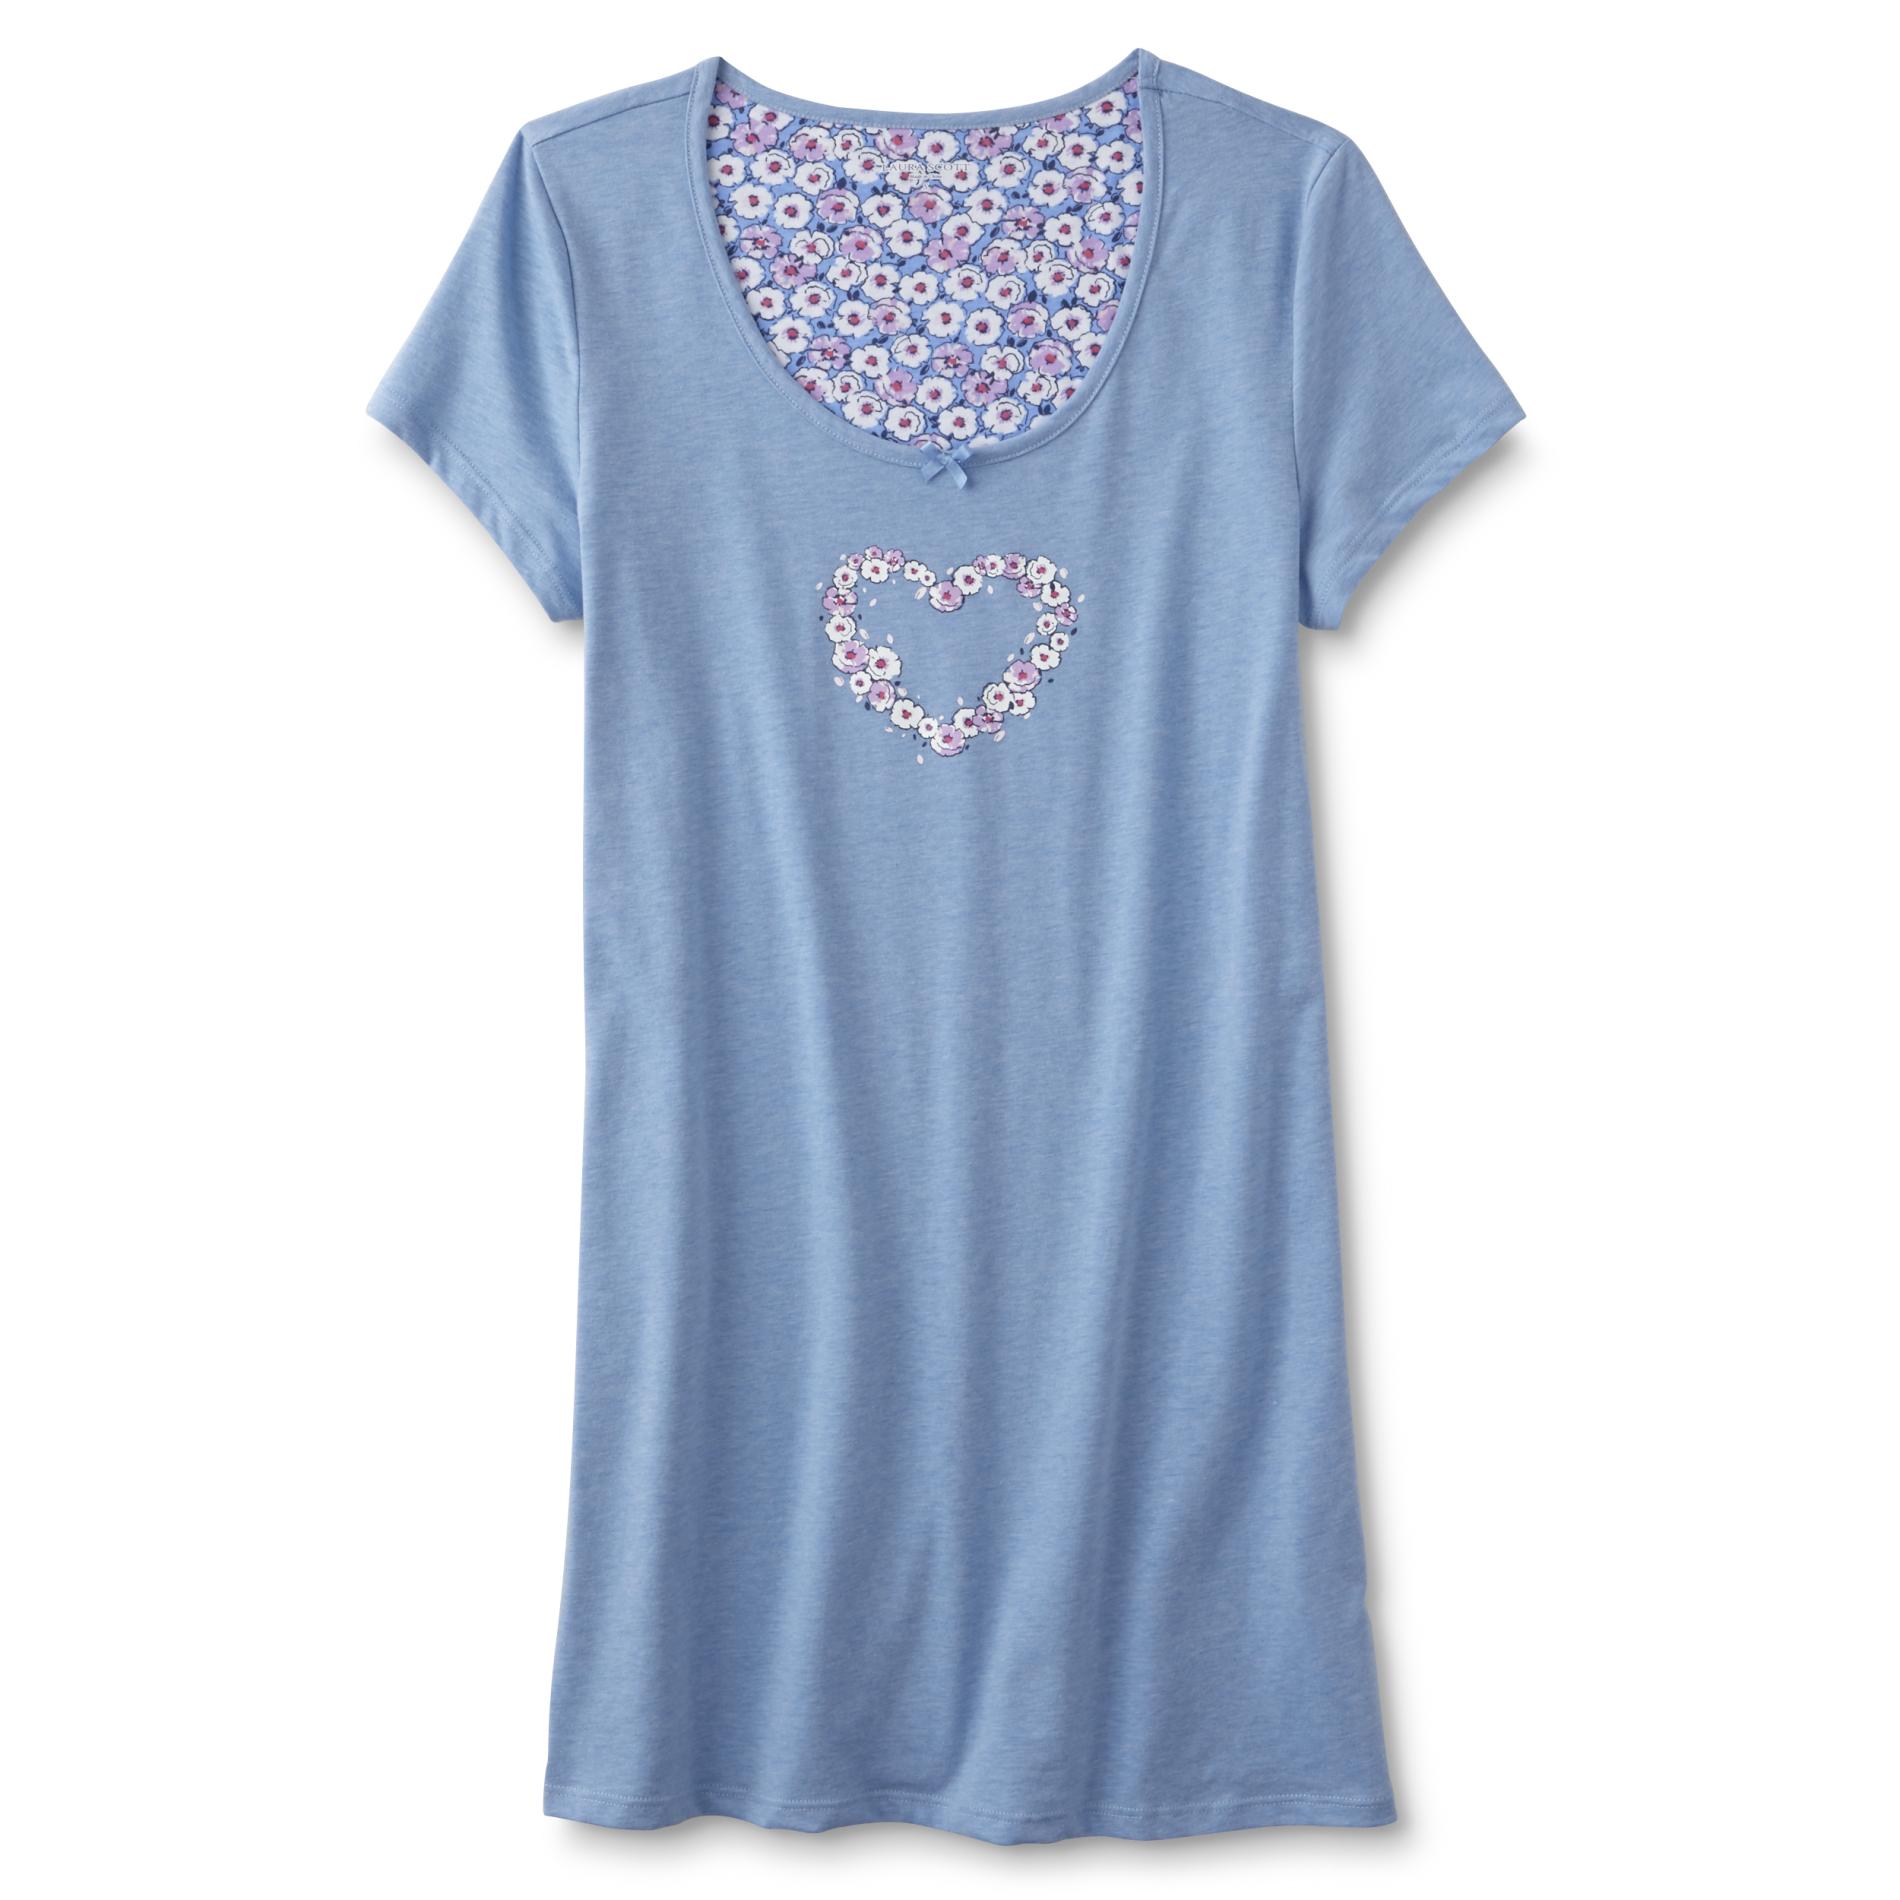 Laura Scott Women's Sleep Shirt - Floral Heart